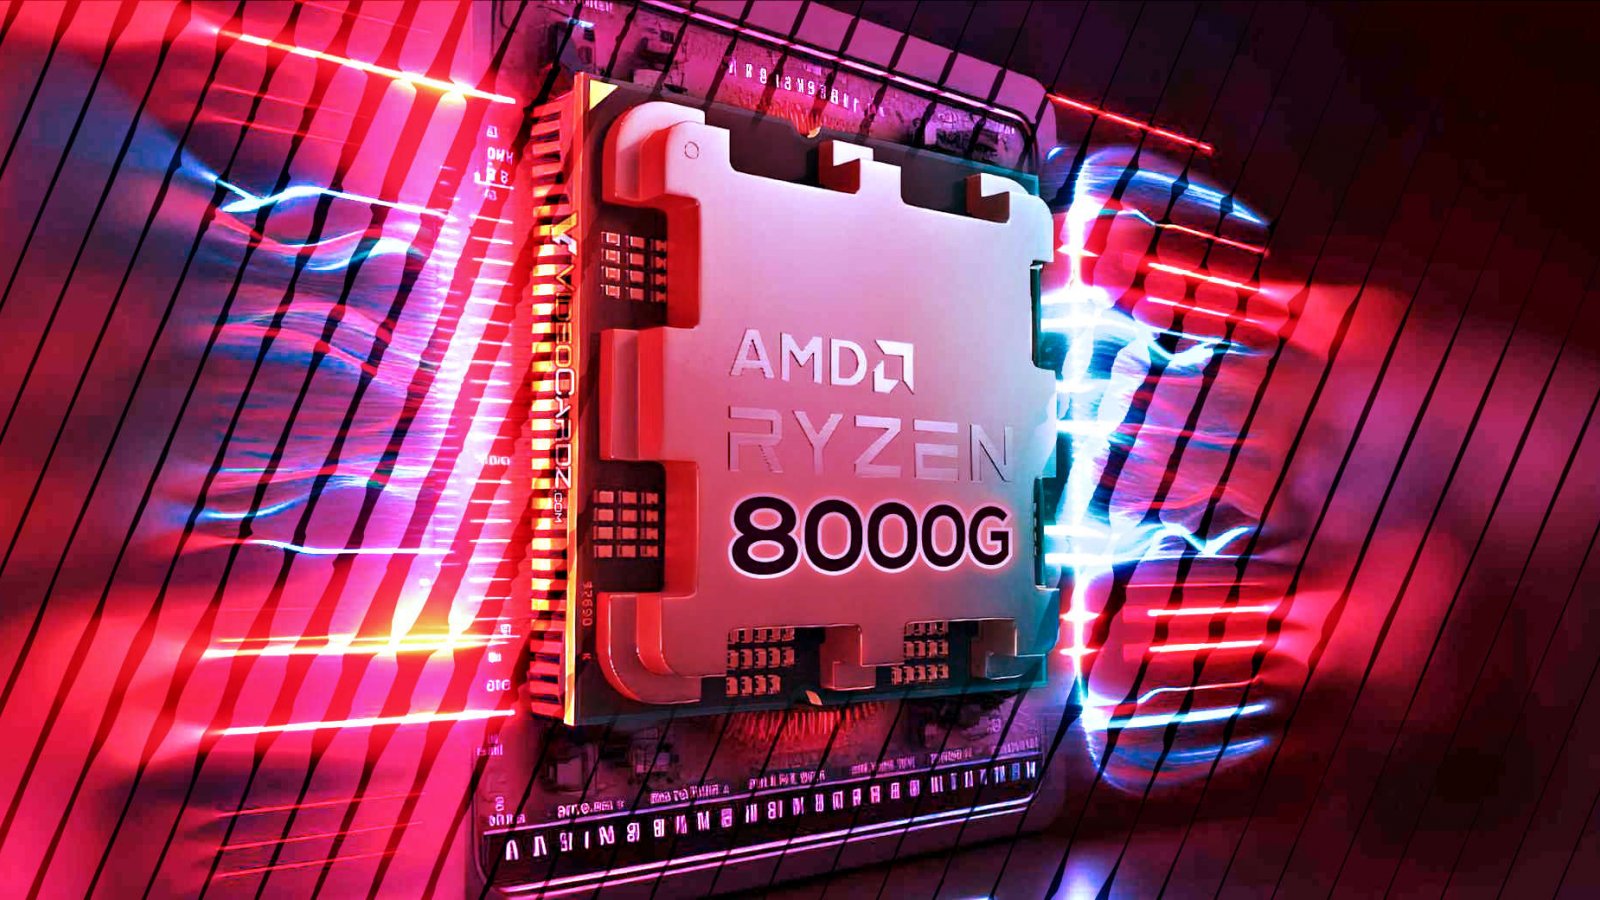 AMD Ryzen 8000G: online i primi benchmark delle nuove APU e sono davvero fenomenali!